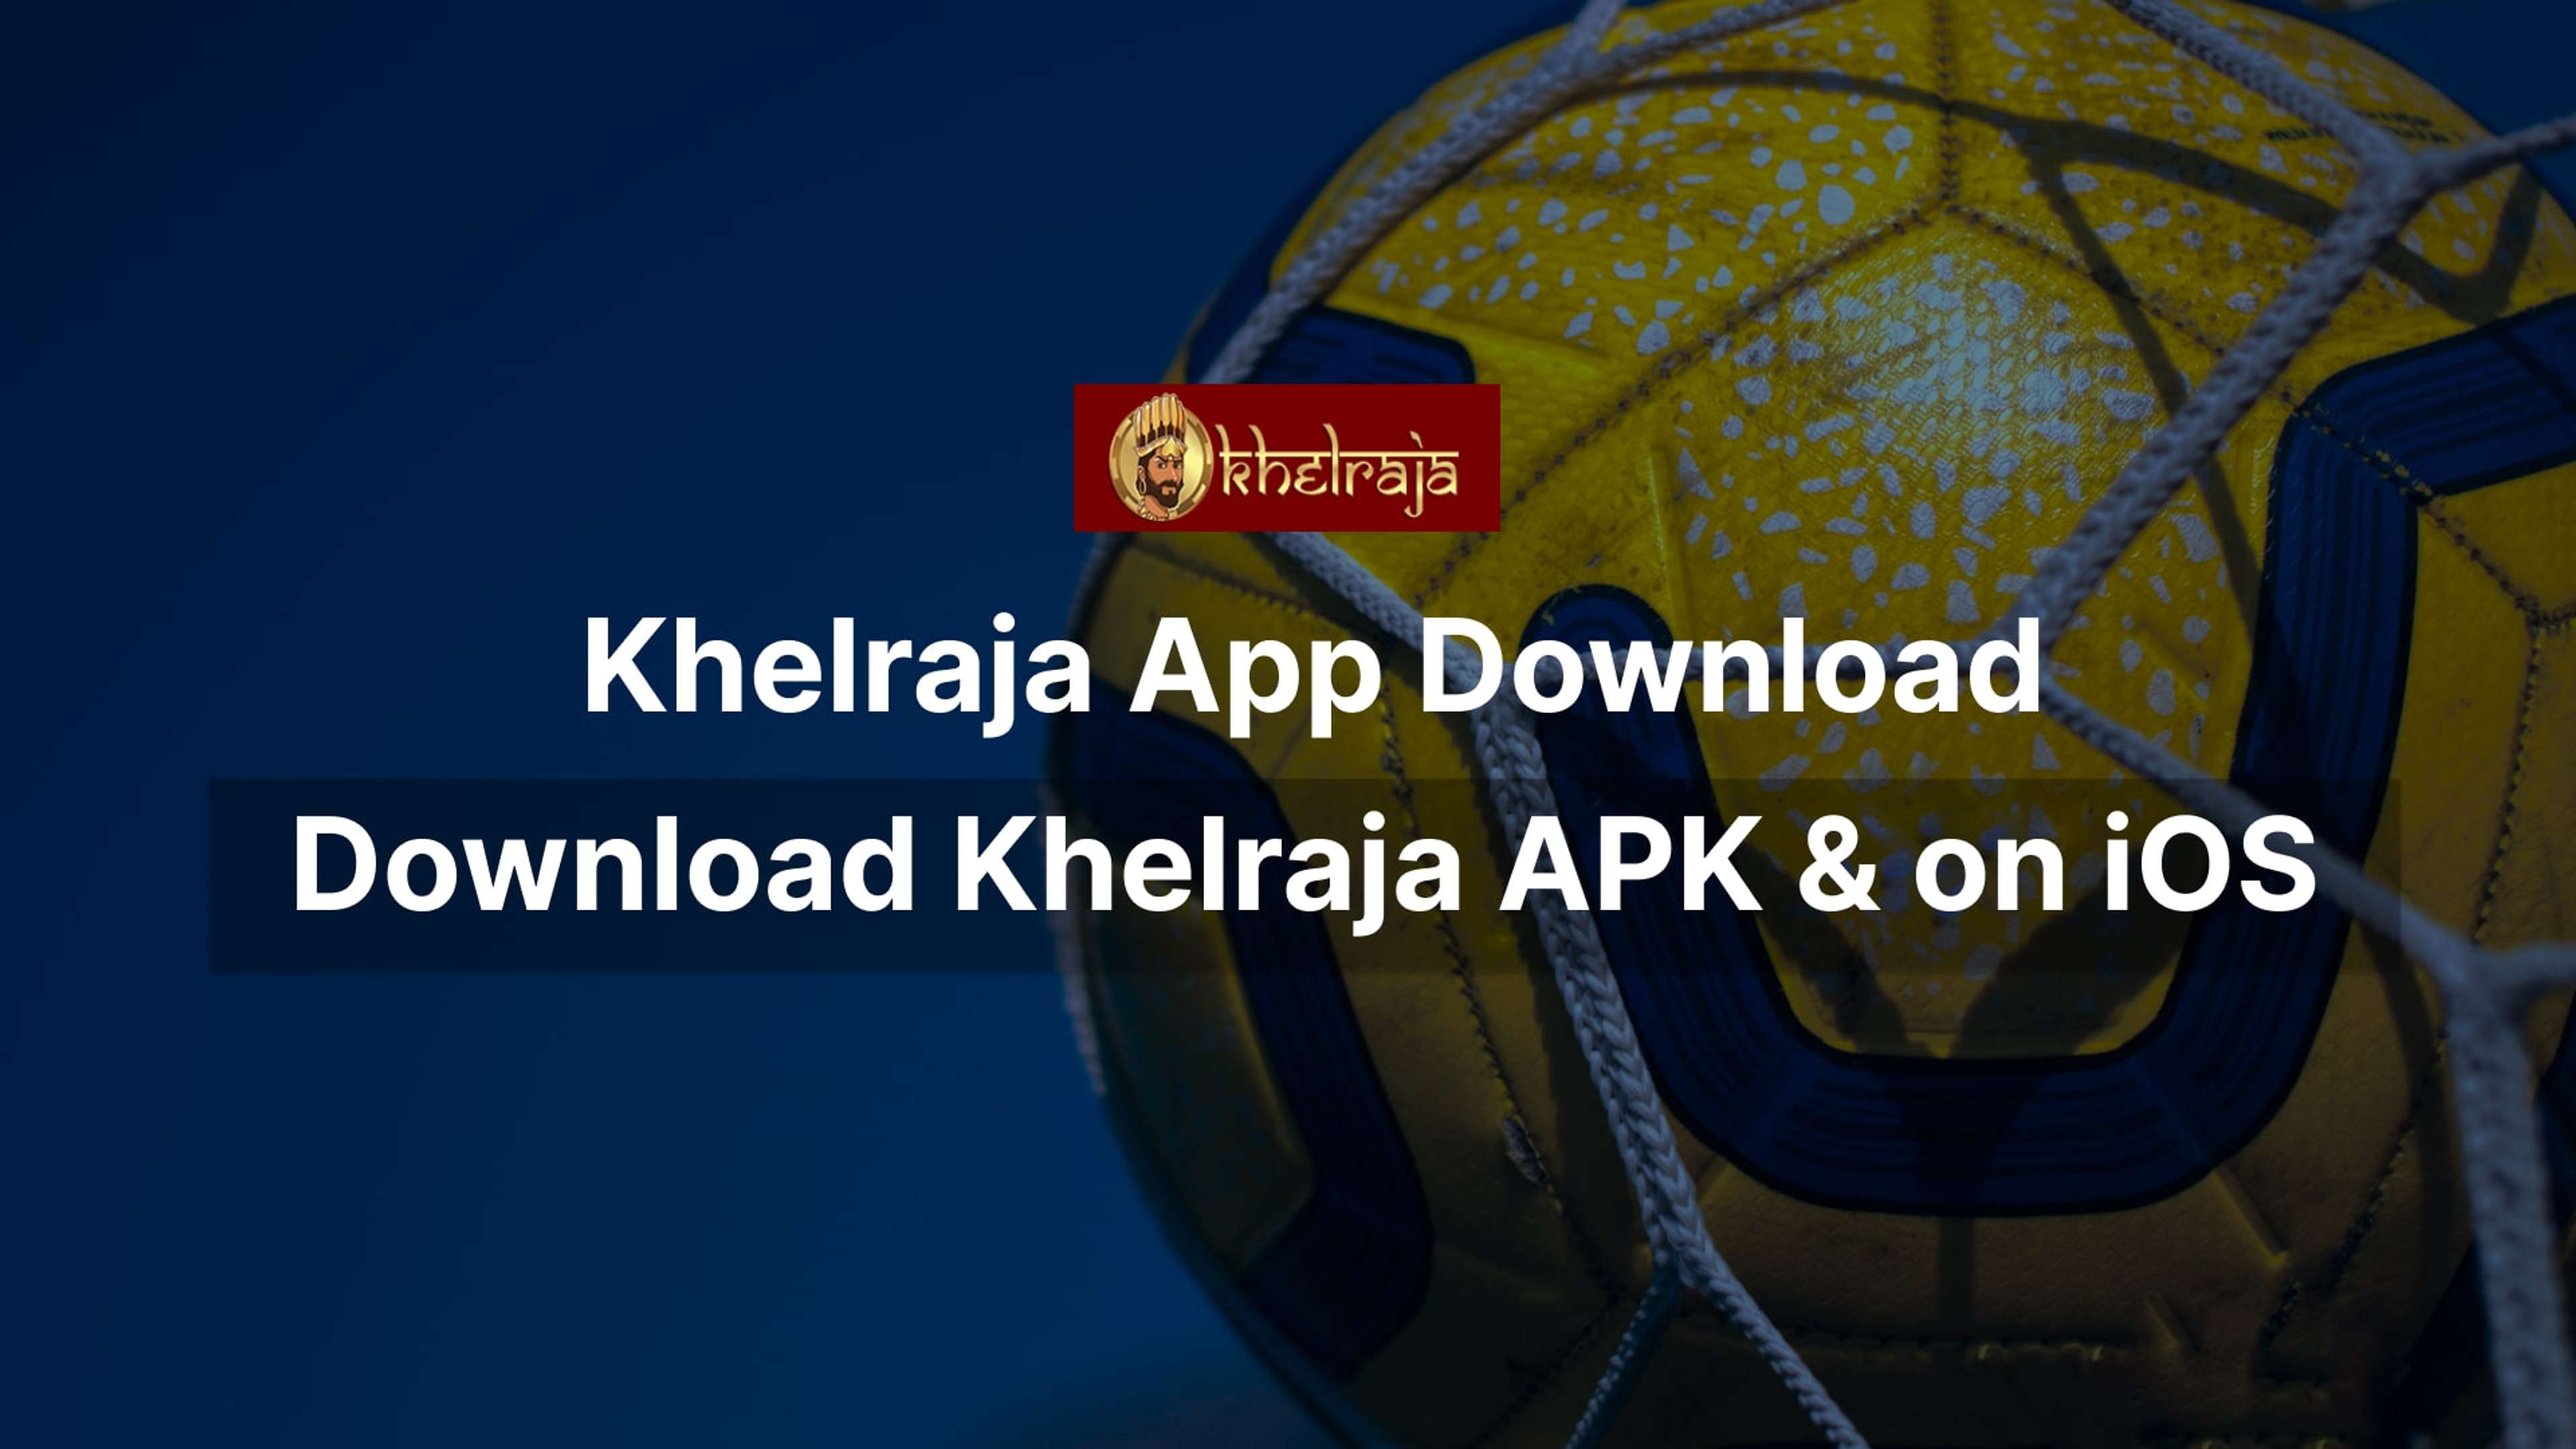 Khelraja app